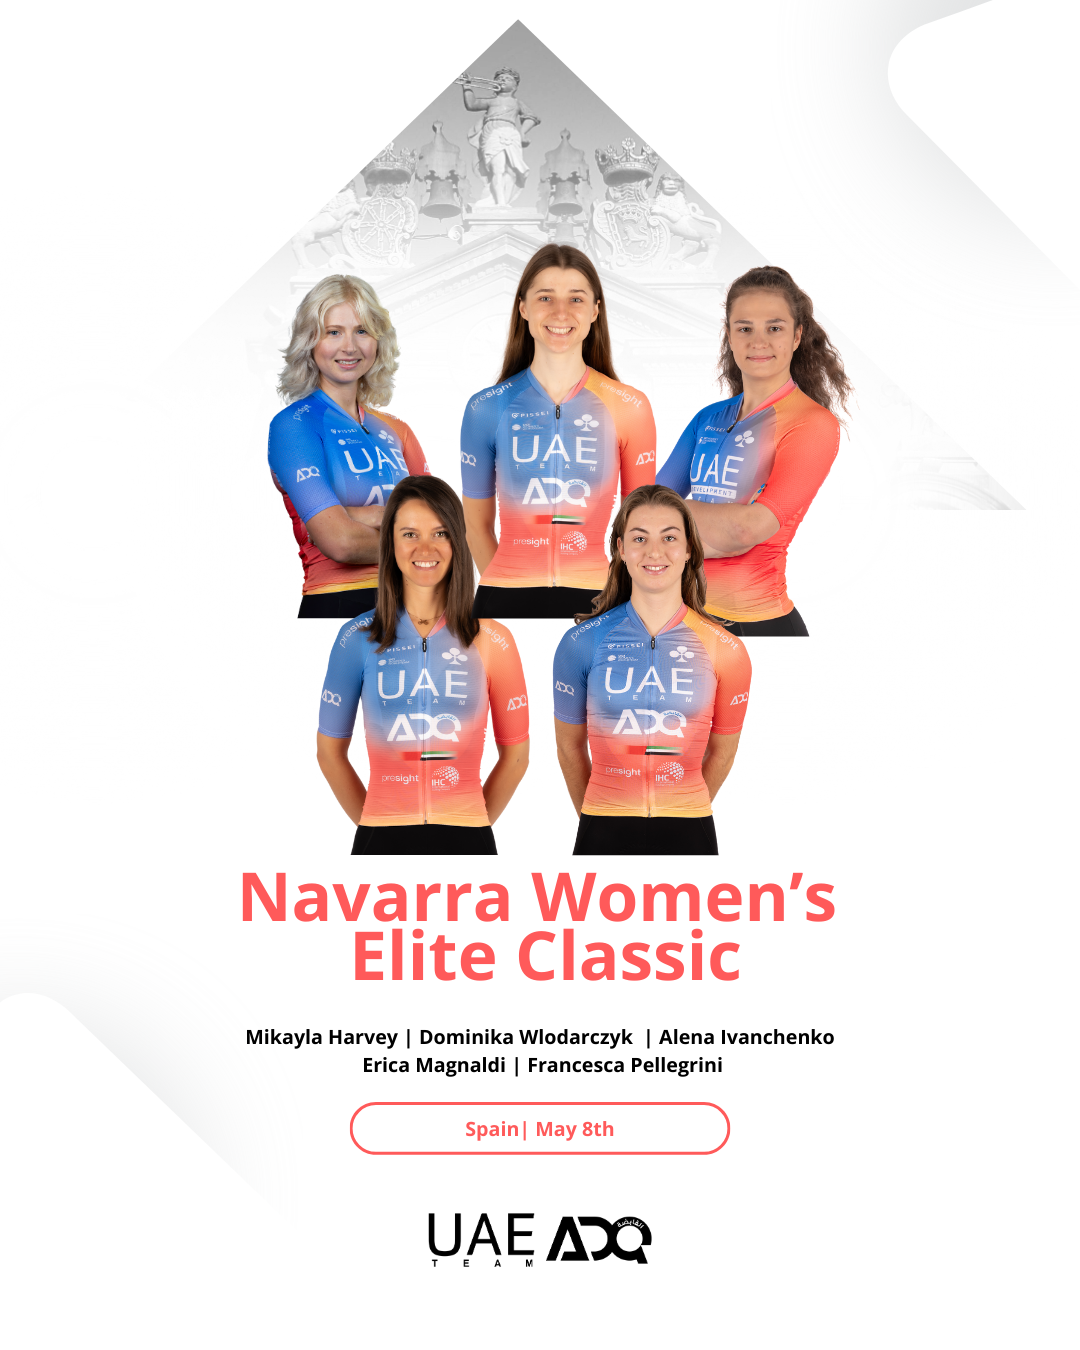 UAE Team ADQ for the Navarra Women's Elite Classic